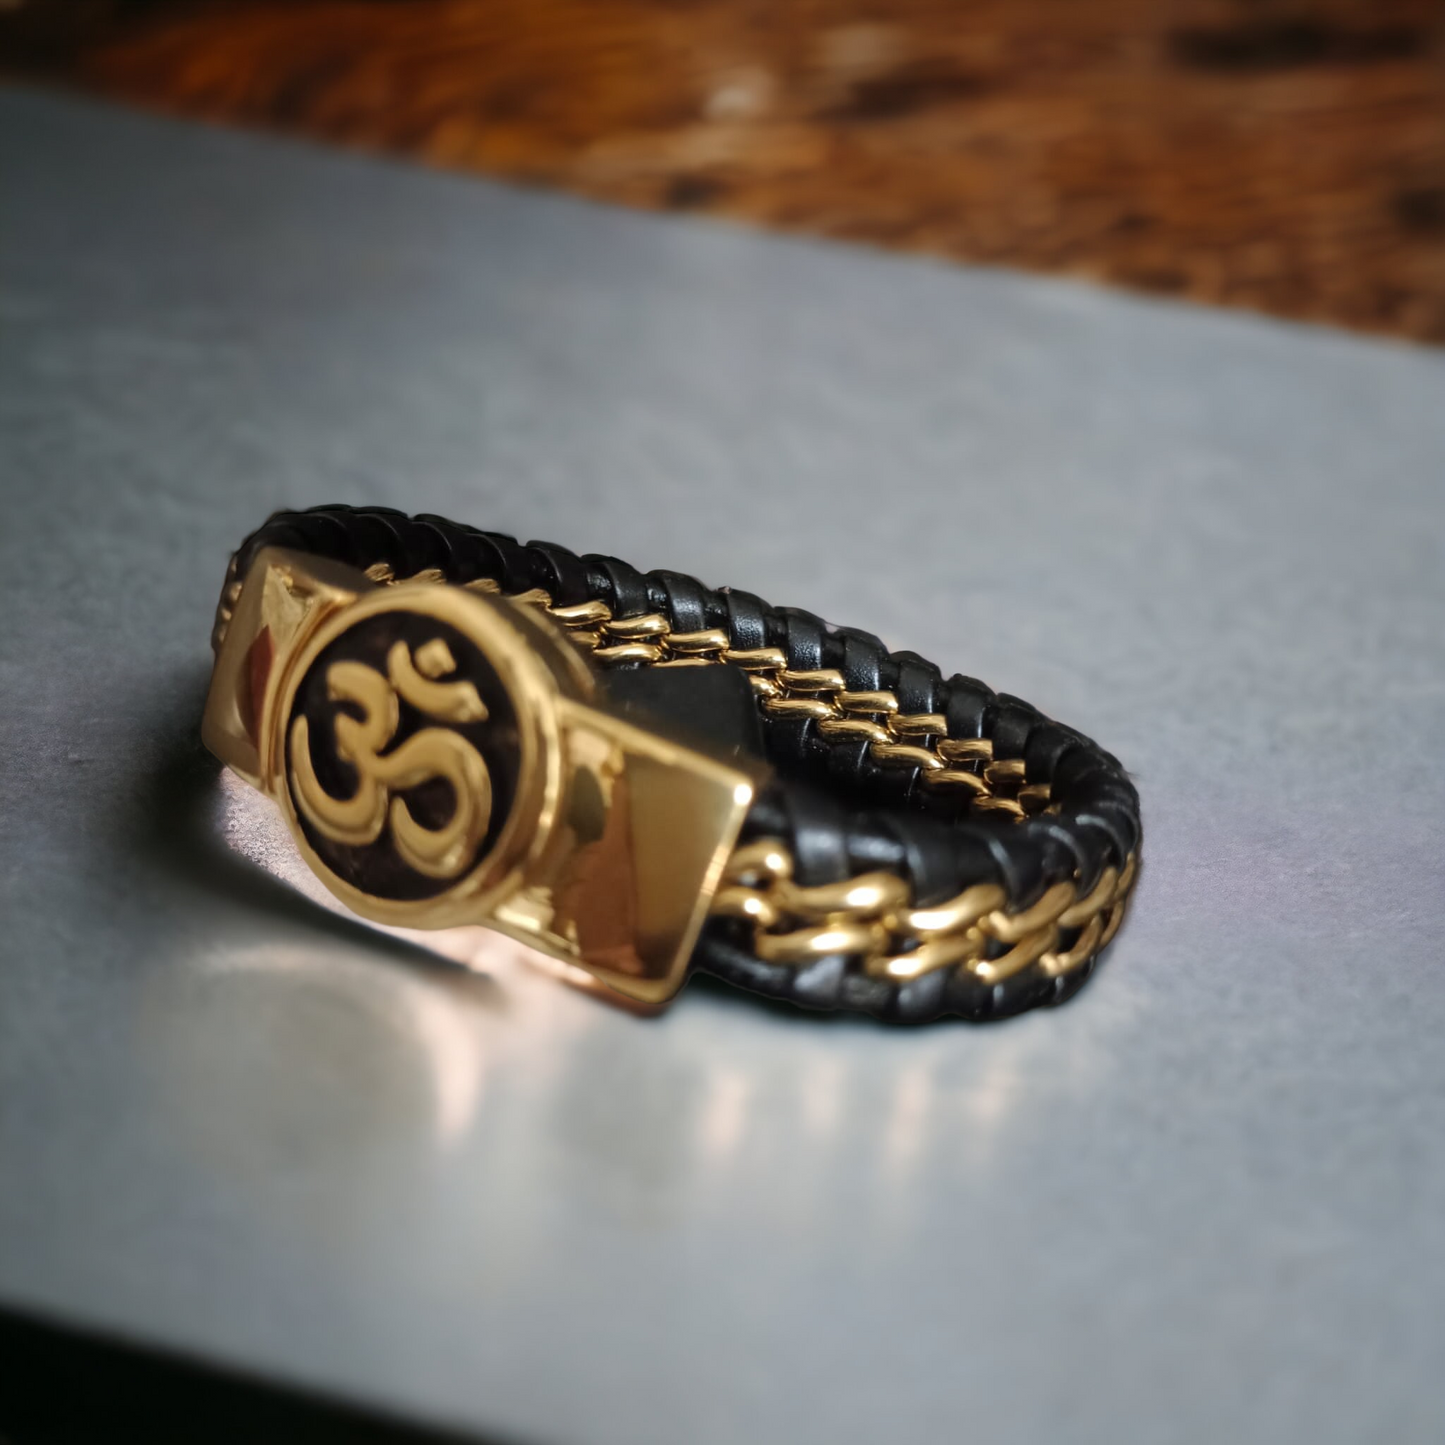 New OM Devotional Gold Bracelet For Men